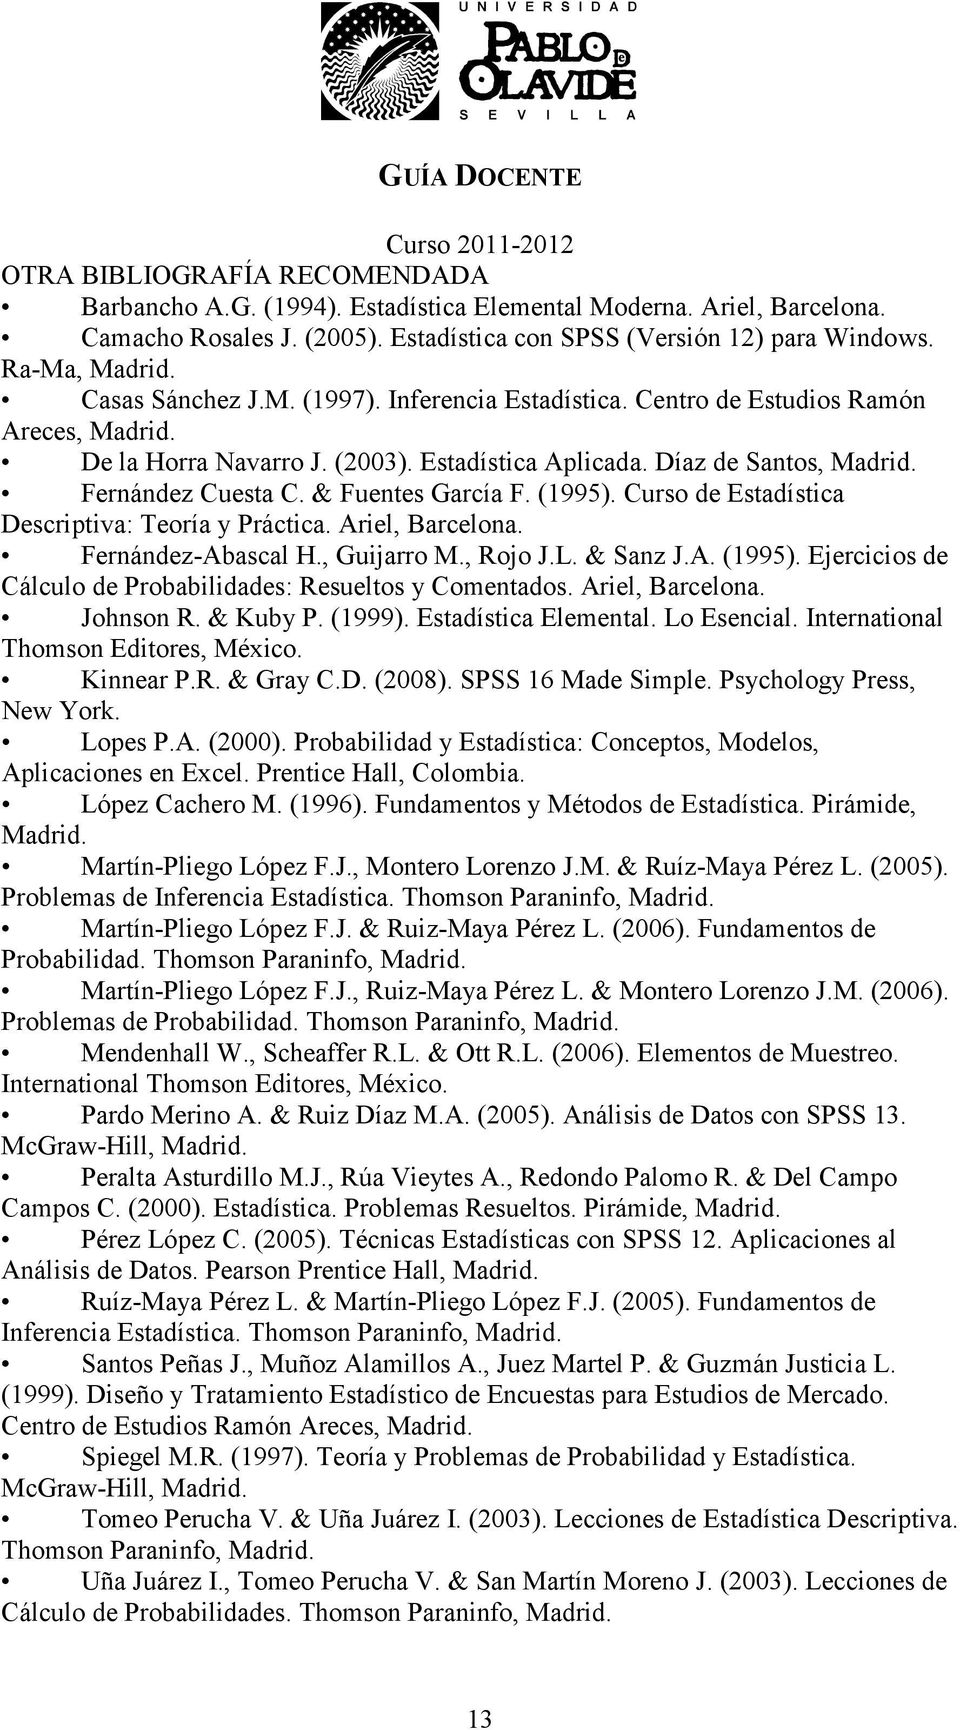 & Fuentes García F. (1995). Curso de Estadística Descriptiva: Teoría y Práctica. Ariel, Barcelona. Fernández-Abascal H., Guijarro M., Rojo J.L. & Sanz J.A. (1995). Ejercicios de Cálculo de Probabilidades: Resueltos y Comentados.